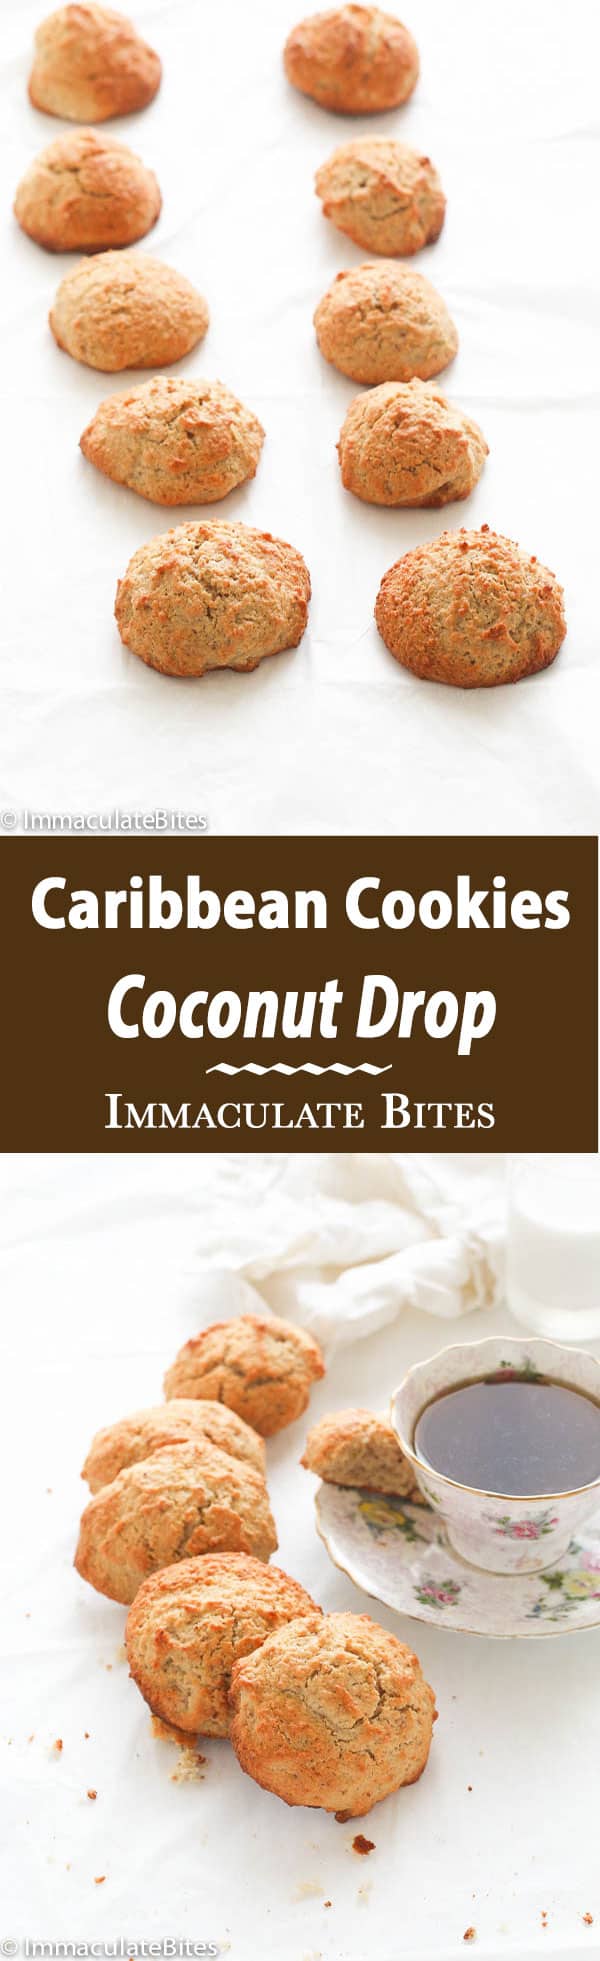 coconut-drop